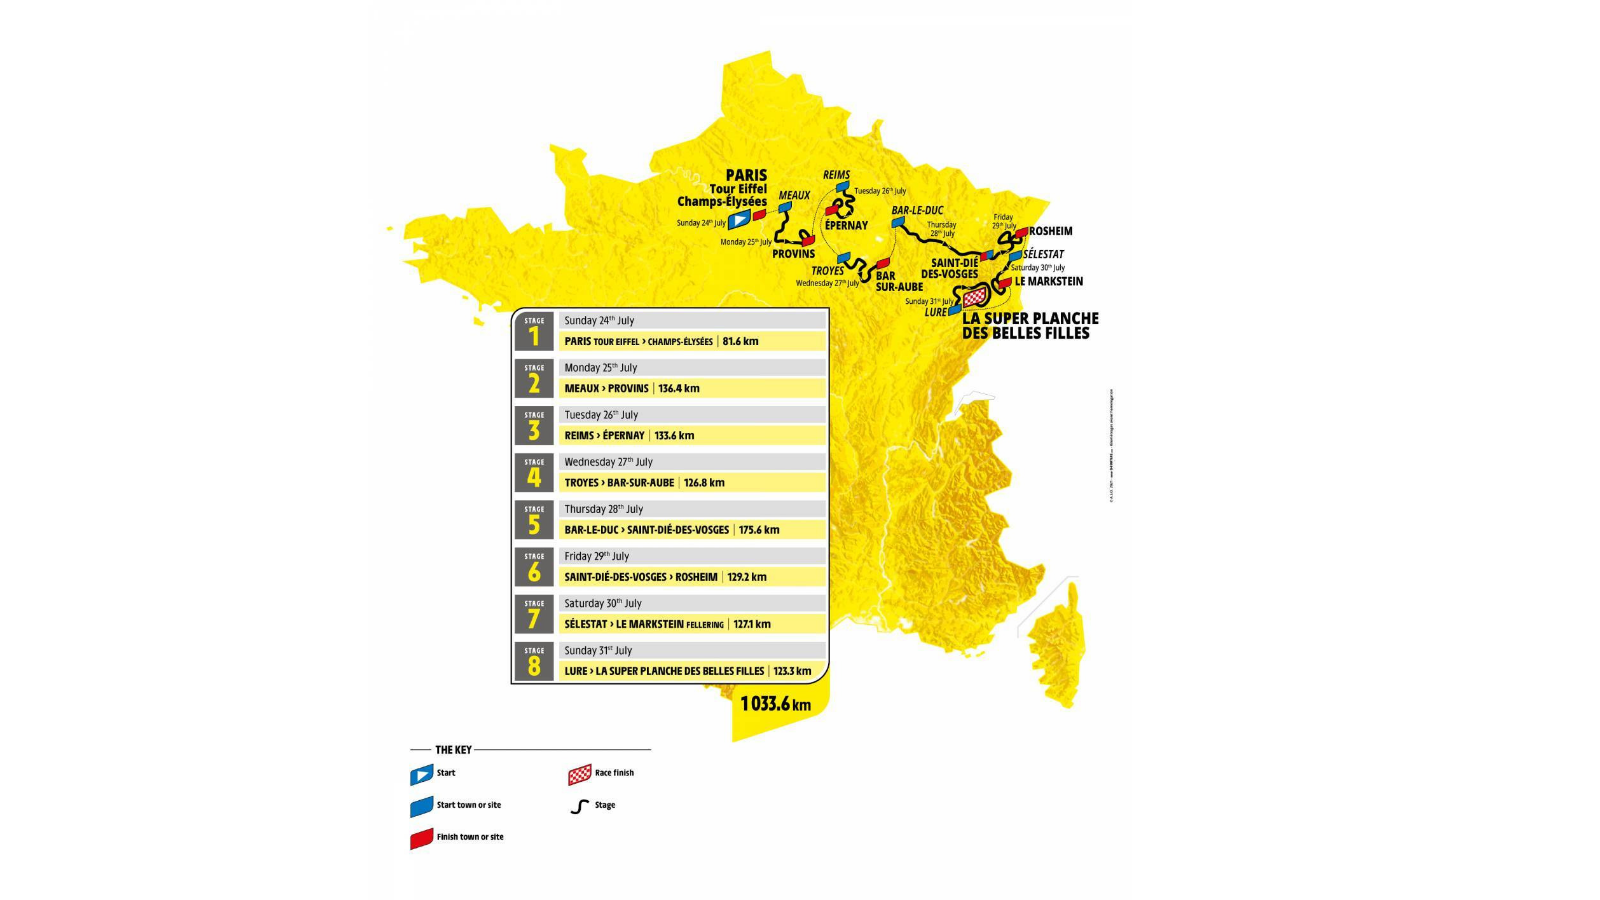 Tour de France Femmes , woem's Tour de France 2022 stages